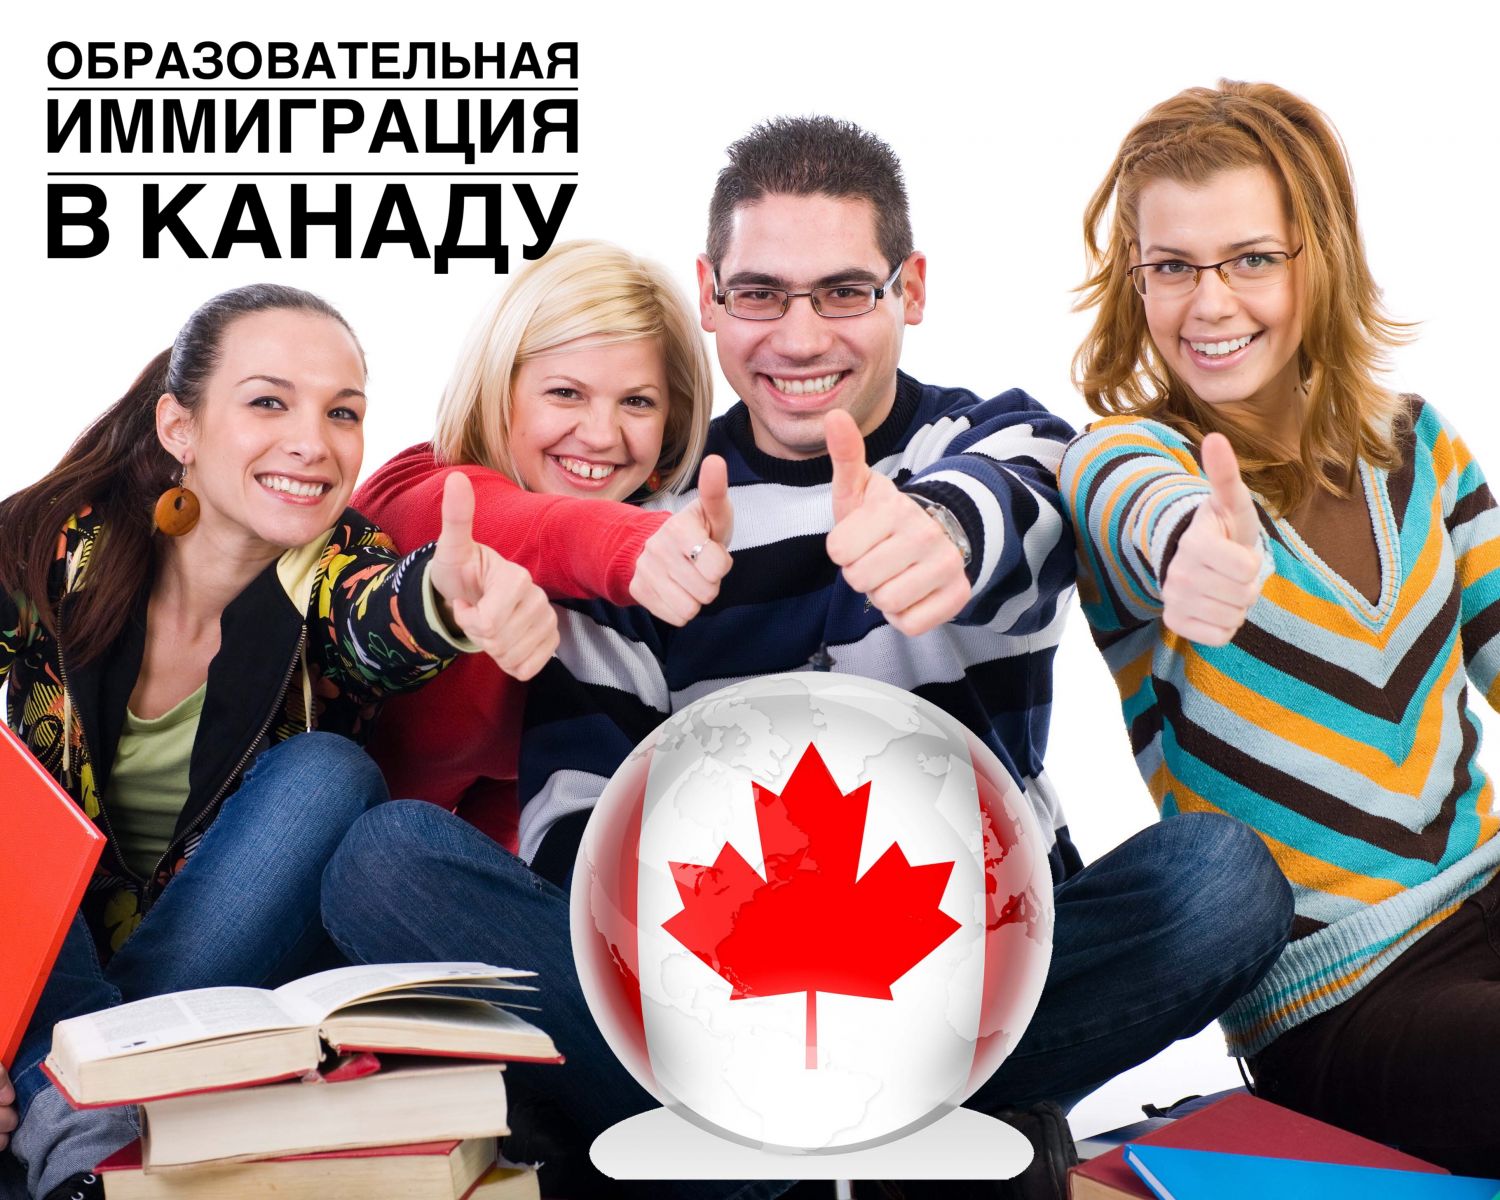 иммиграция в Канаду через образование